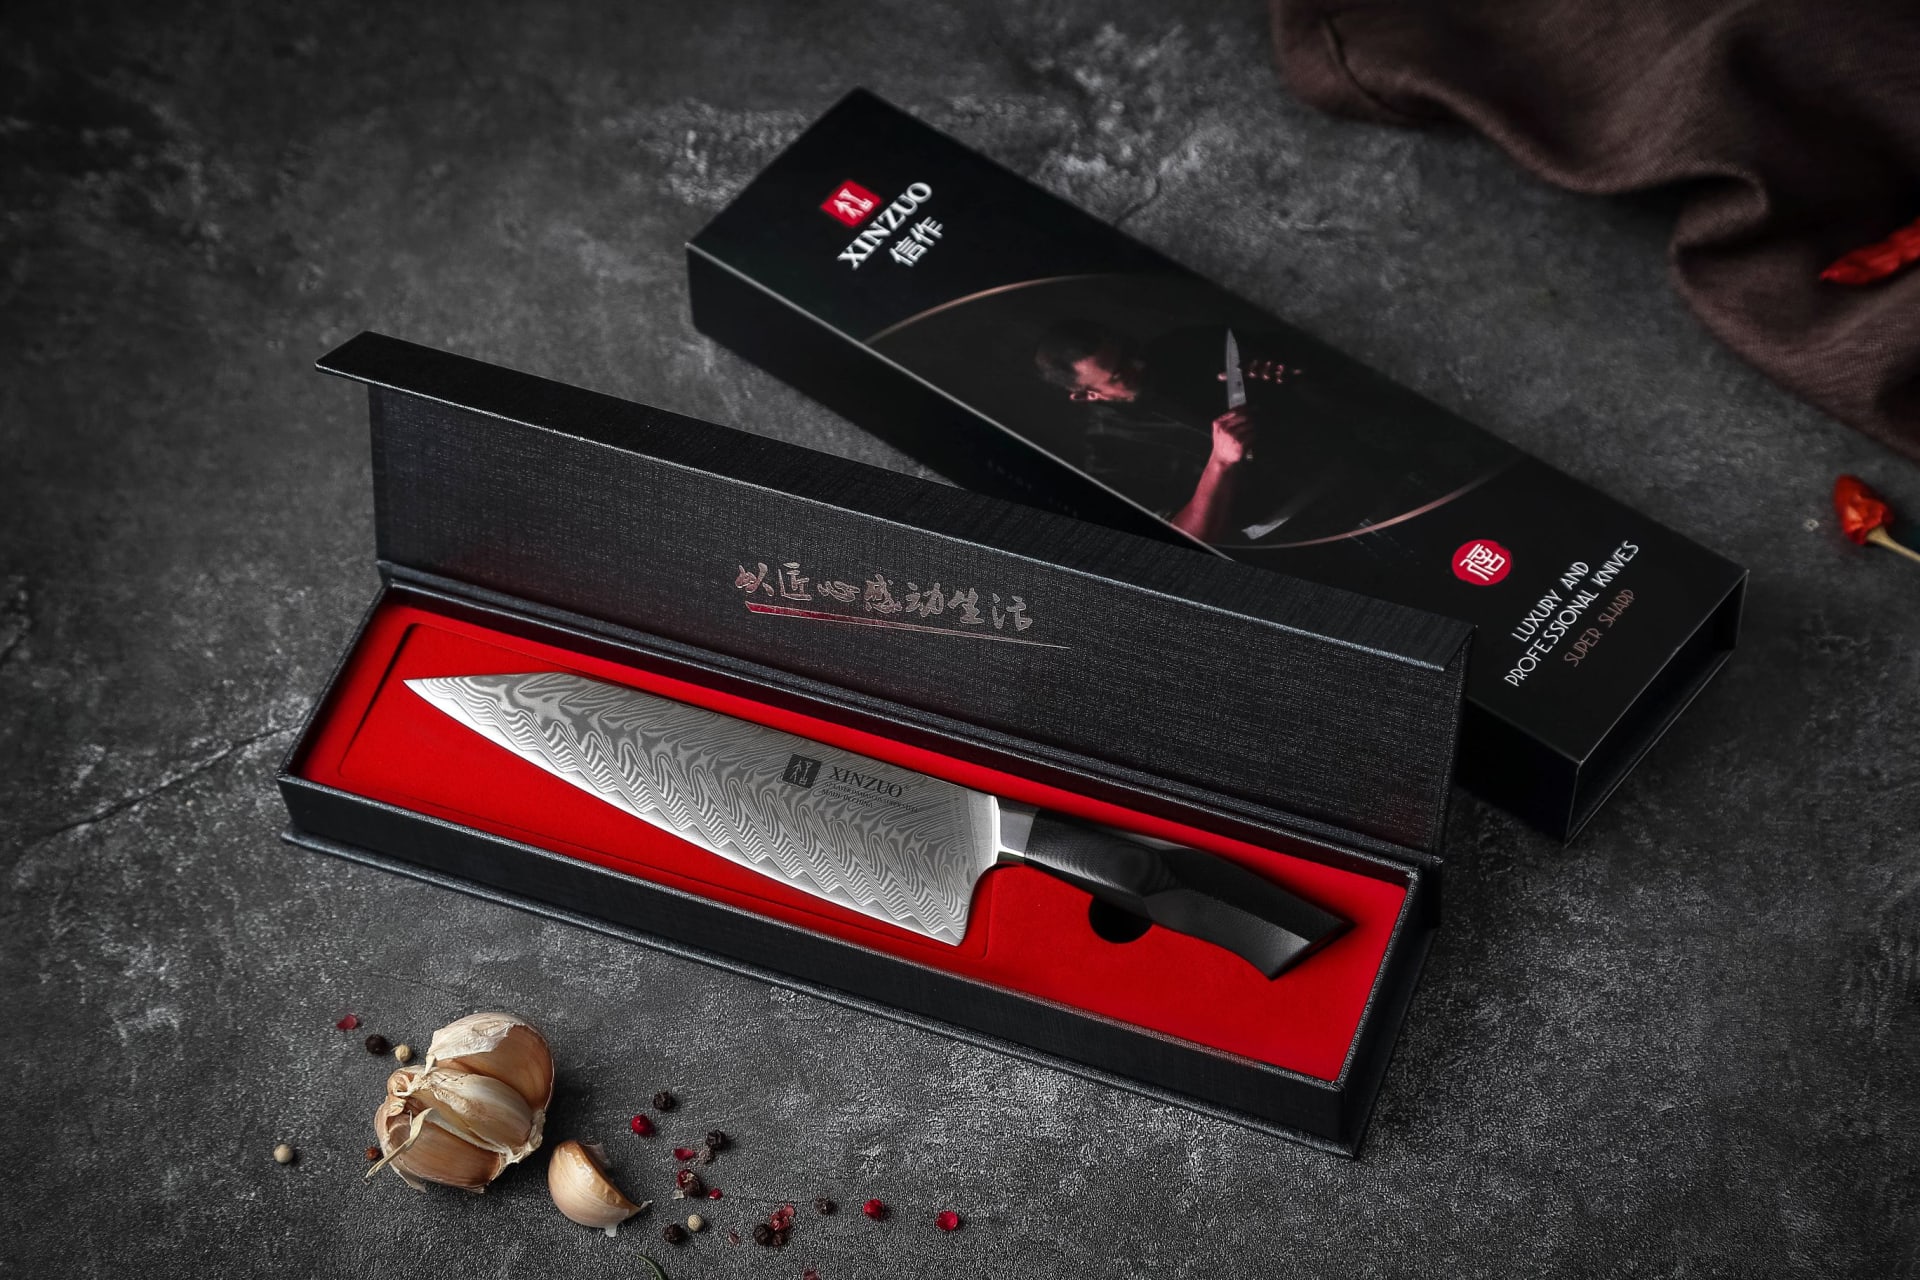 Všechny kuchyňské nože XinZuo jsou dodávány v dárkovém balení = ideální jako dárek